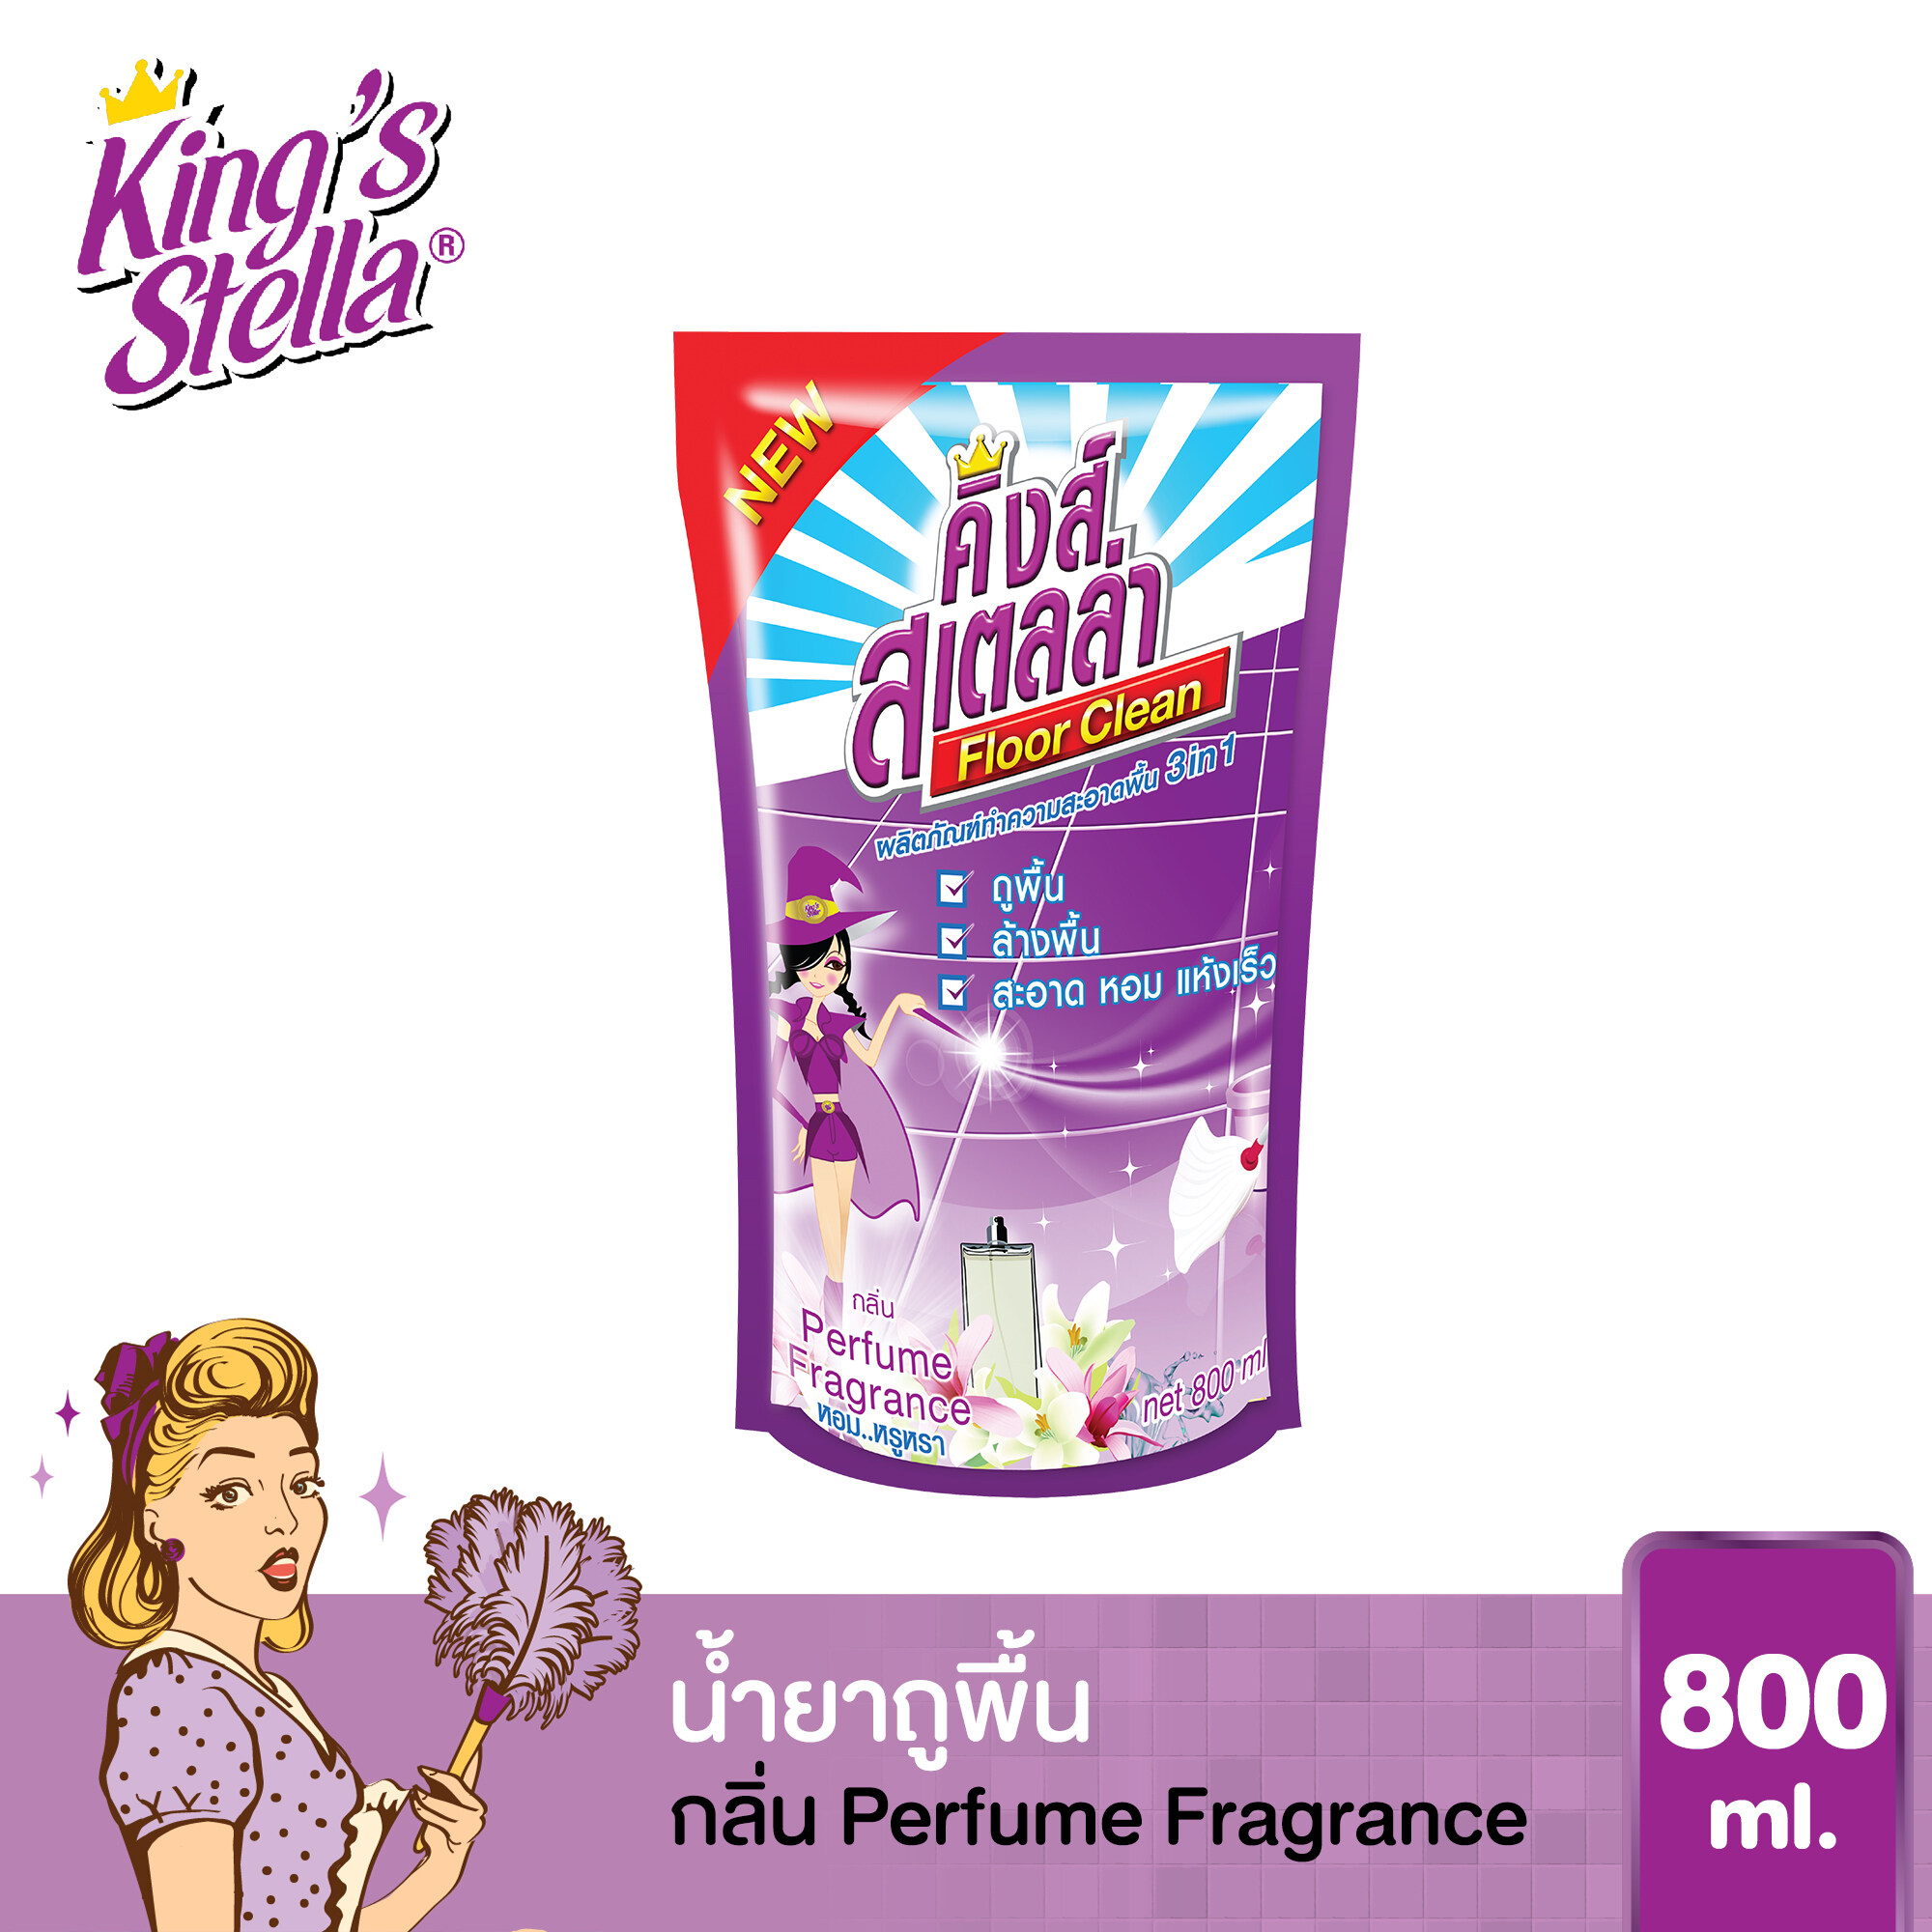 น้ำยาถูพื้น ขจัดกลิ่นอับ กลิ่นอันไม่พึงประสงค์ได้ในทันที King's Stella Floor Clean 800ml. กลิ่น Perfume Fragrance